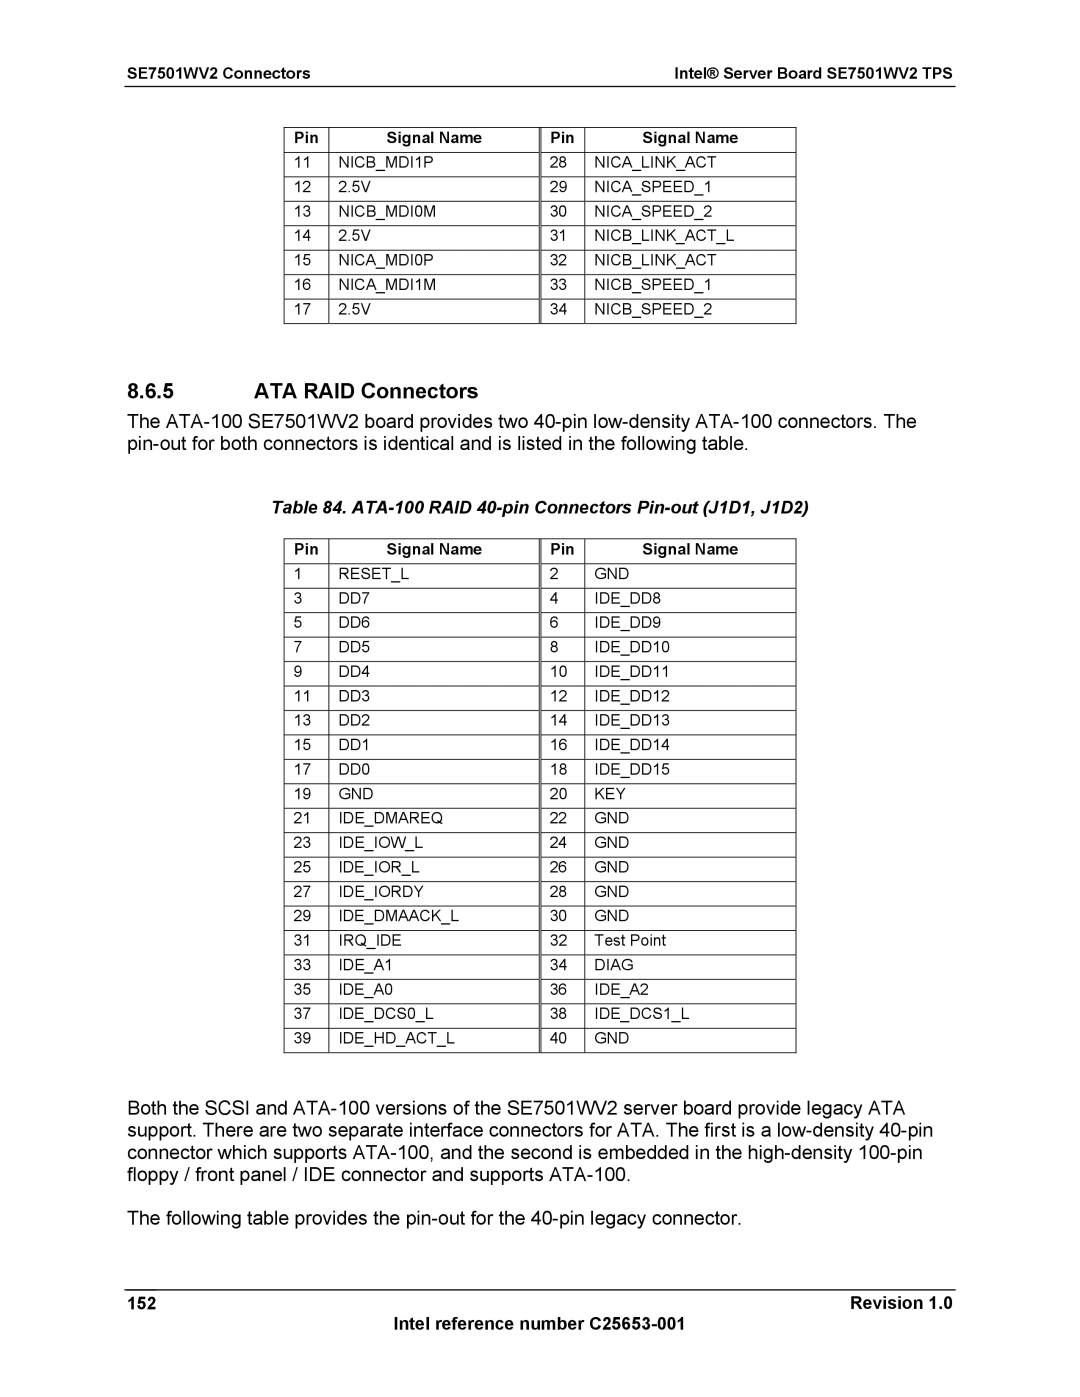 Intel SE7501WV2 manual ATA RAID Connectors, ATA-100 RAID 40-pin Connectors Pin-out J1D1, J1D2 